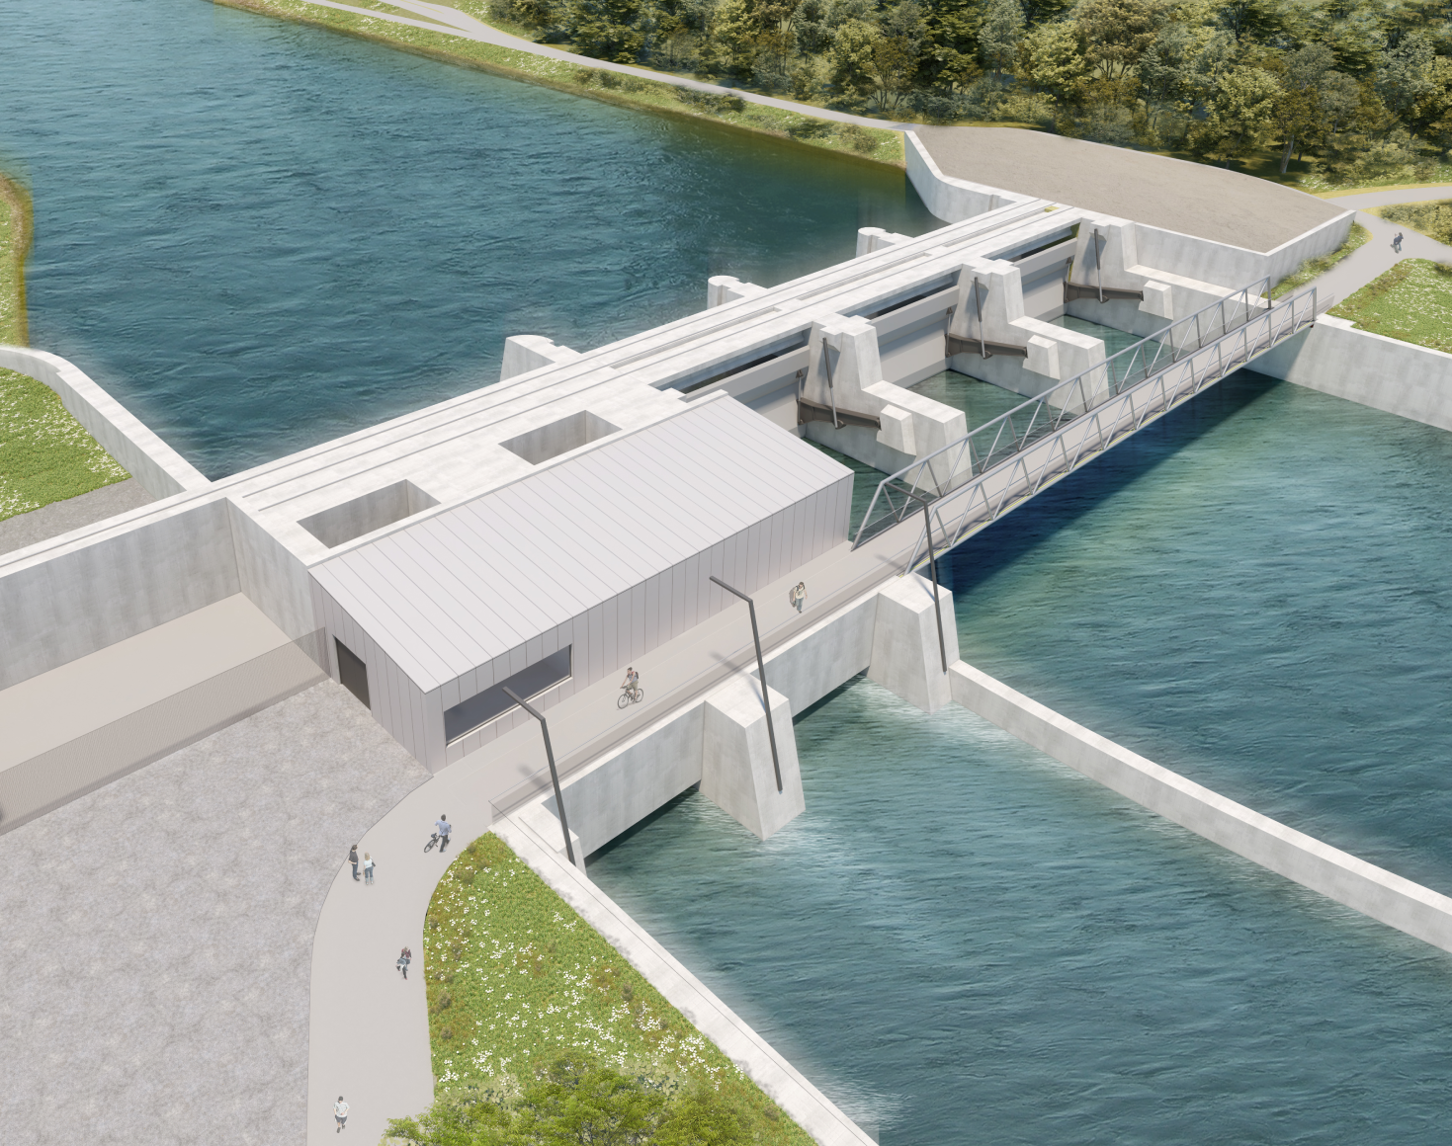 Visualisierung des Murkraftwerks Gratkorn zeigt eine Draufsicht des geplanten Wasserkraftwerks am Fluss, inklusive Wehranlagen, Fischwanderhilfe und Betriebsgebäuden mit Personen, die auf dem angrenzenden Gehweg spazieren.